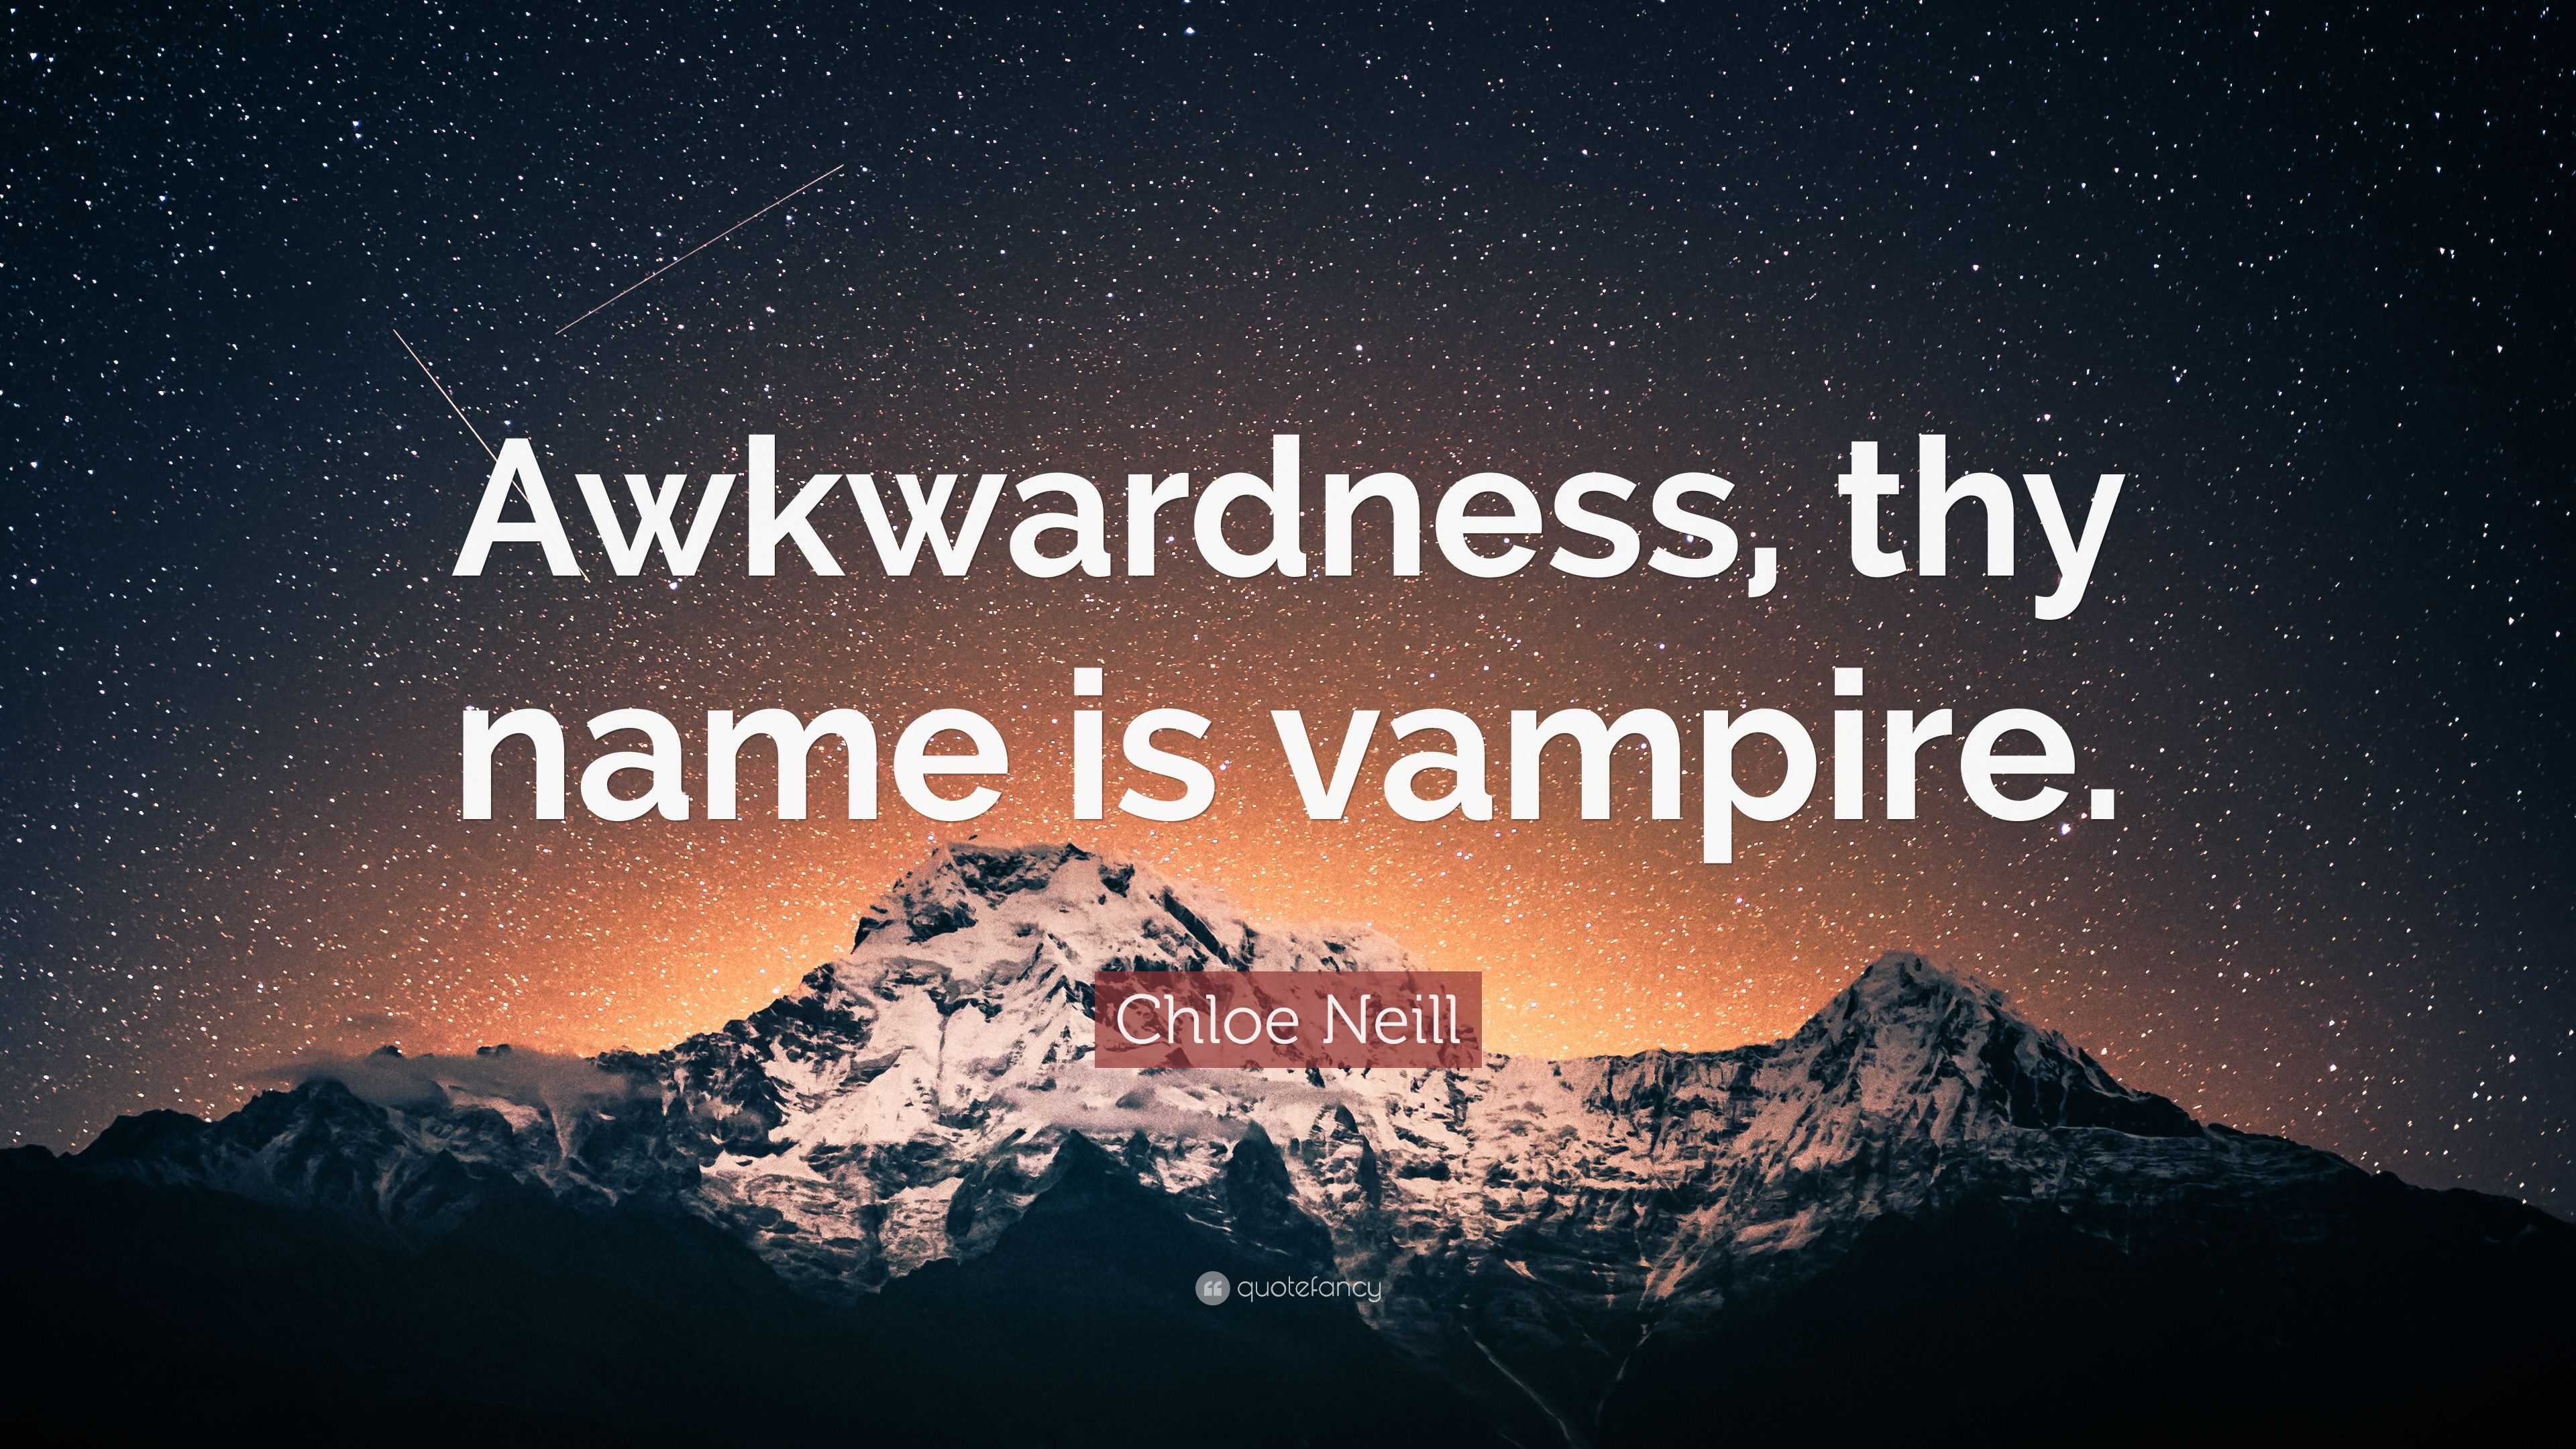 Chloe Neill Quote: “Awkwardness, thy name is vampire.”